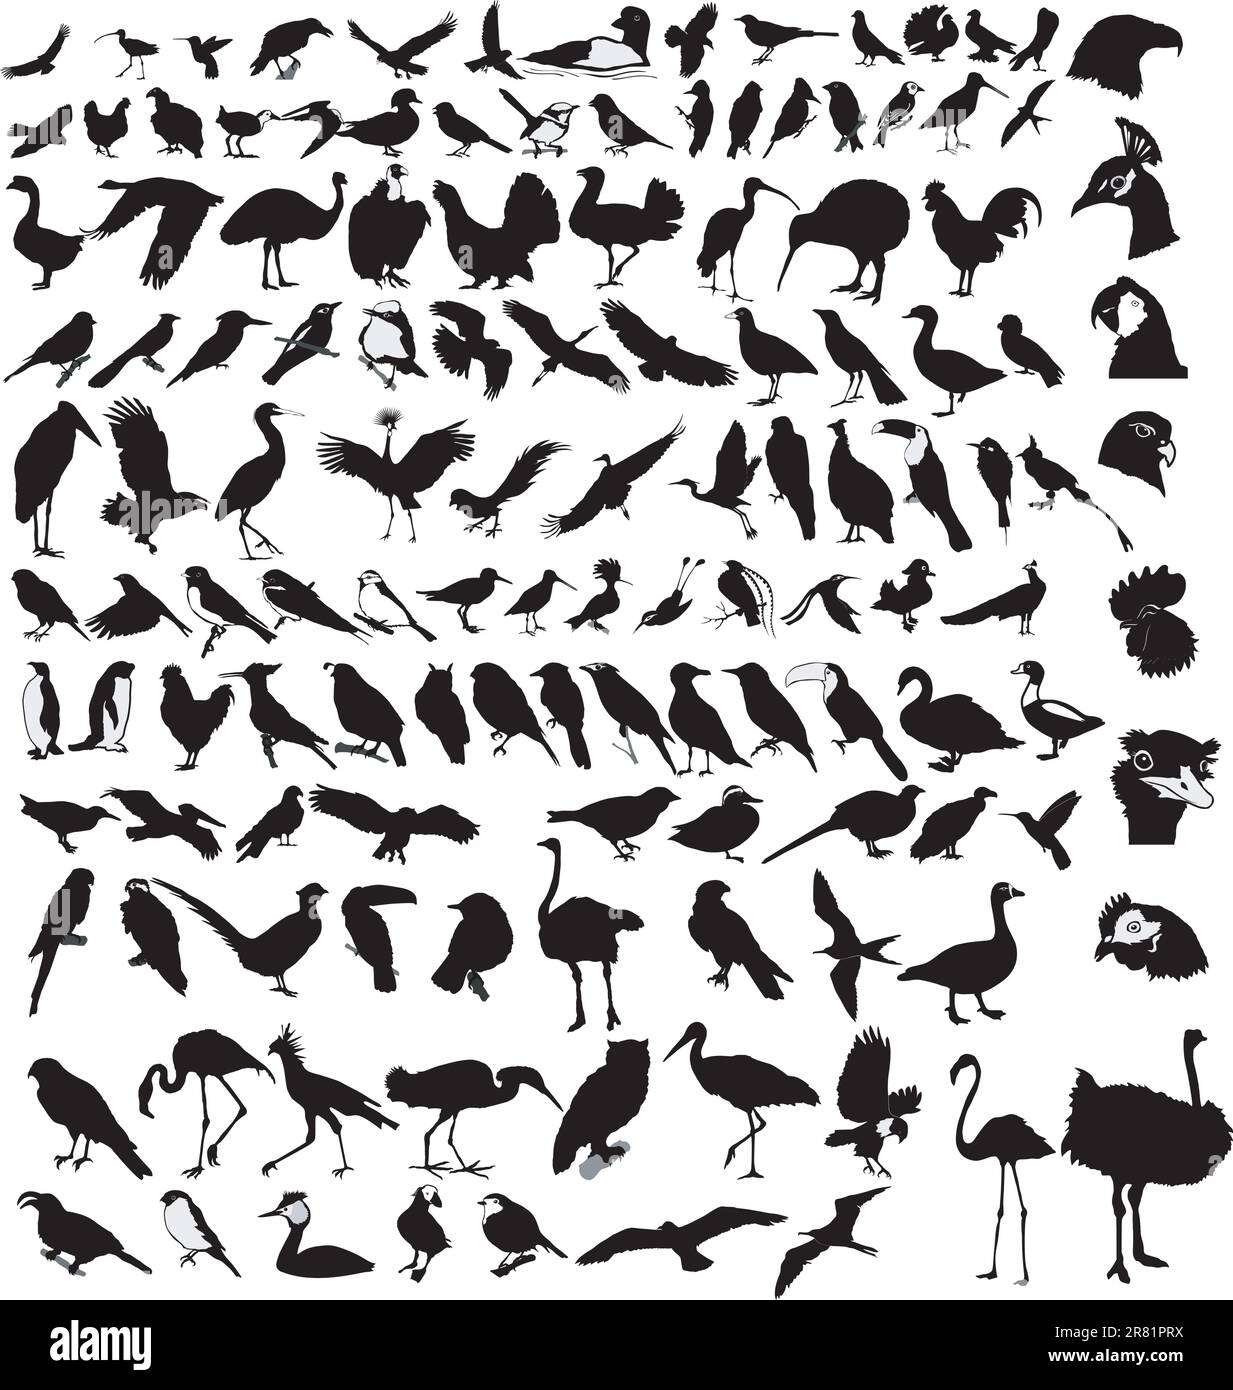 Das große Set der verschiedenen Vögel Stock Vektor